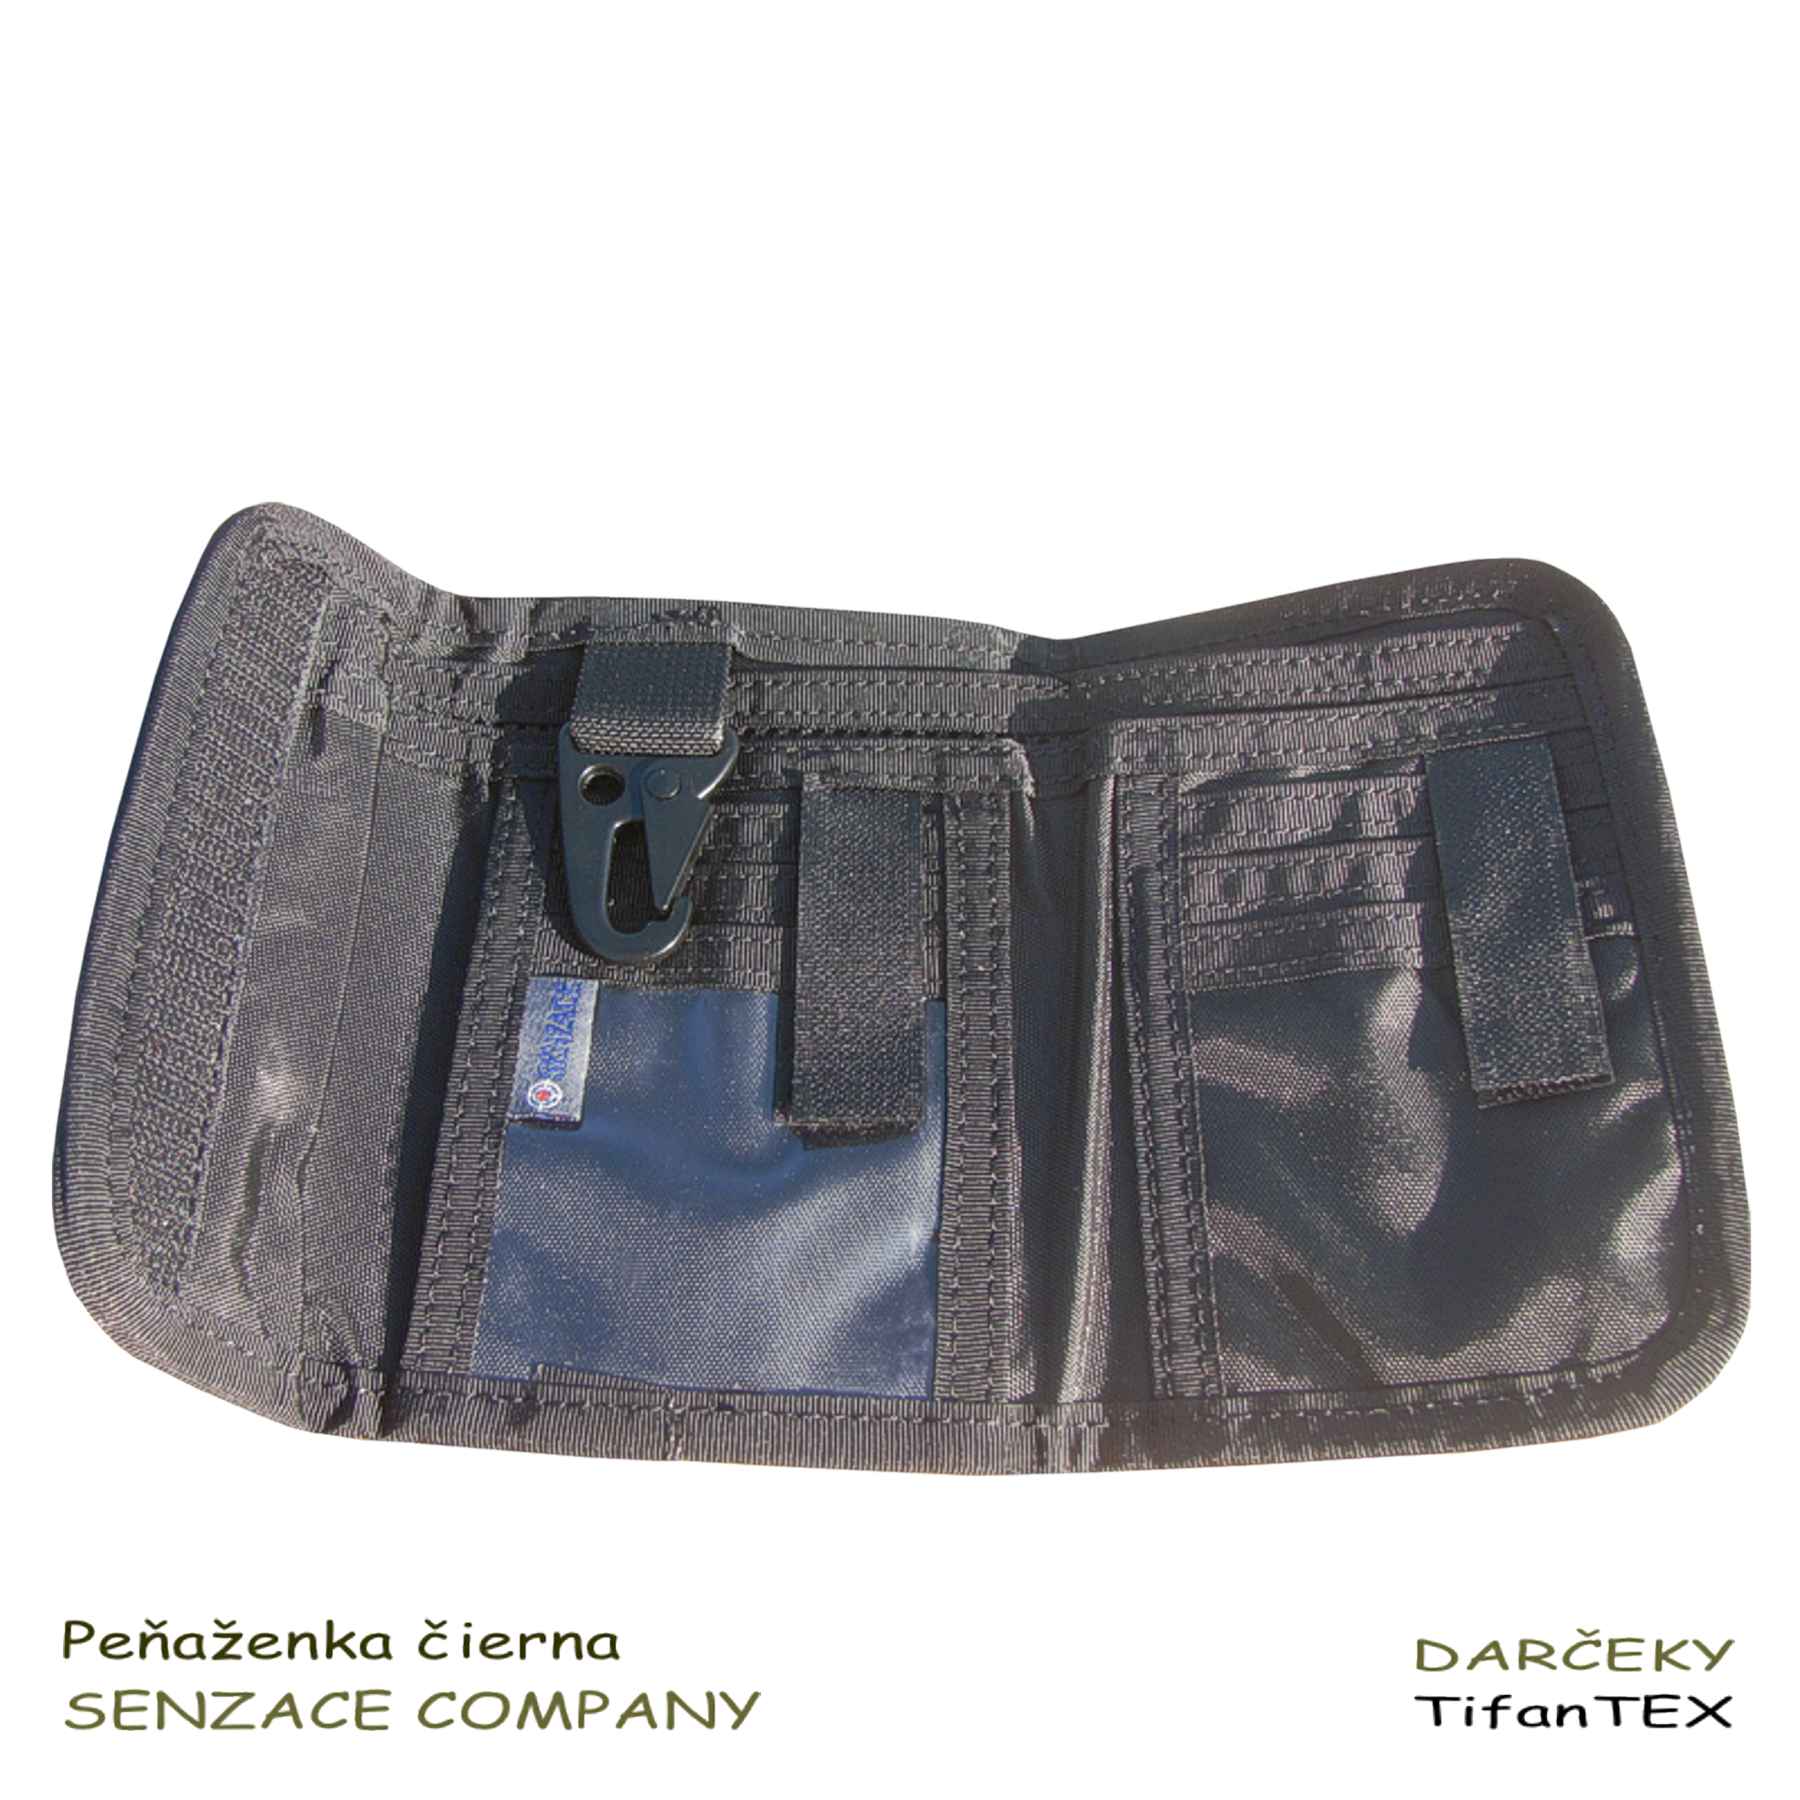 Nylonová peňaženka Senzace Company farba čierna, Tifantex veľkosklad